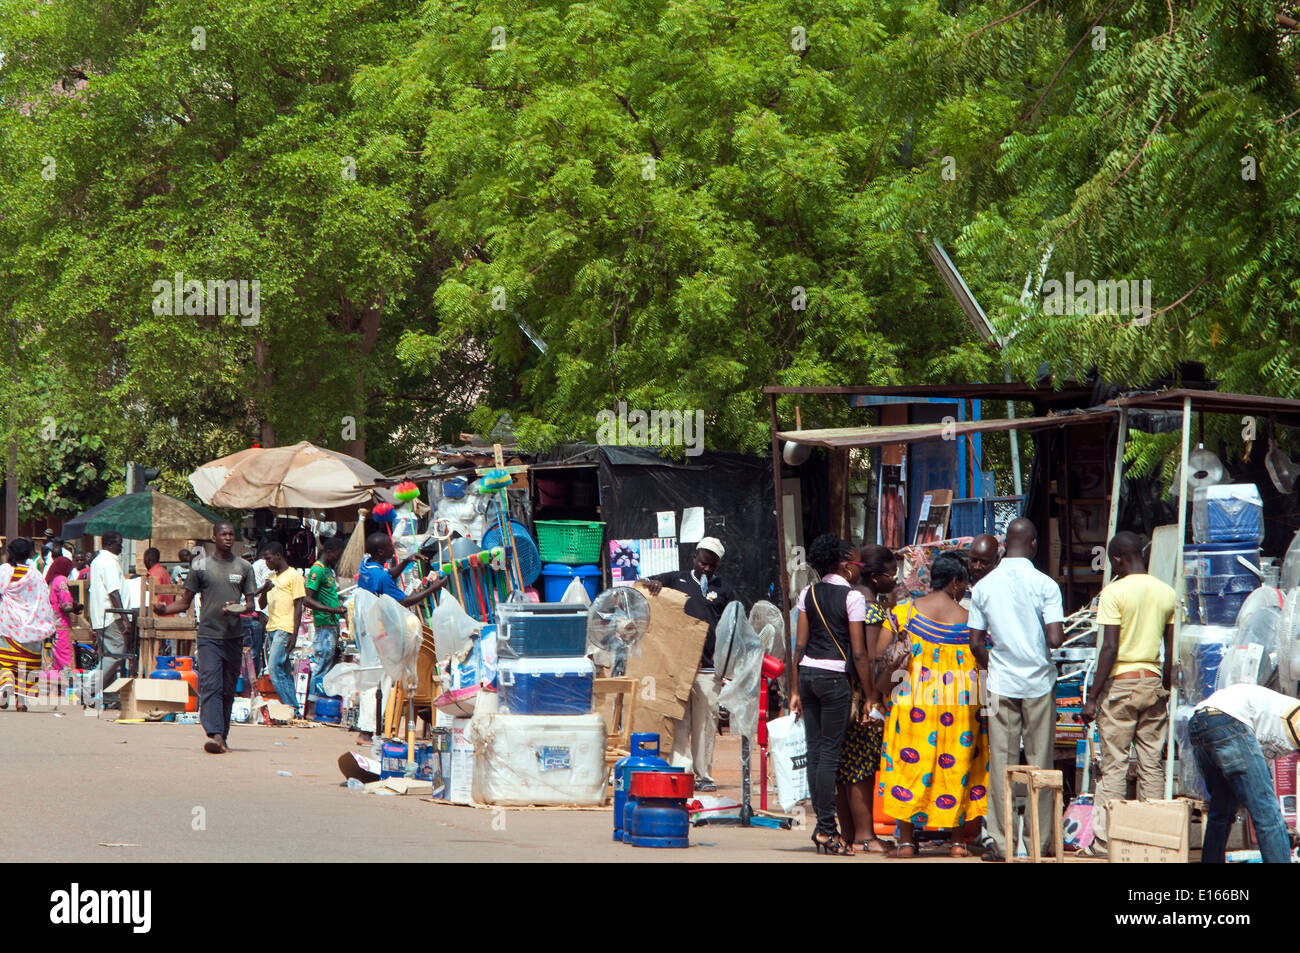 street scene with street vendors, Ouagadougou, Burkina Faso Stock Photo